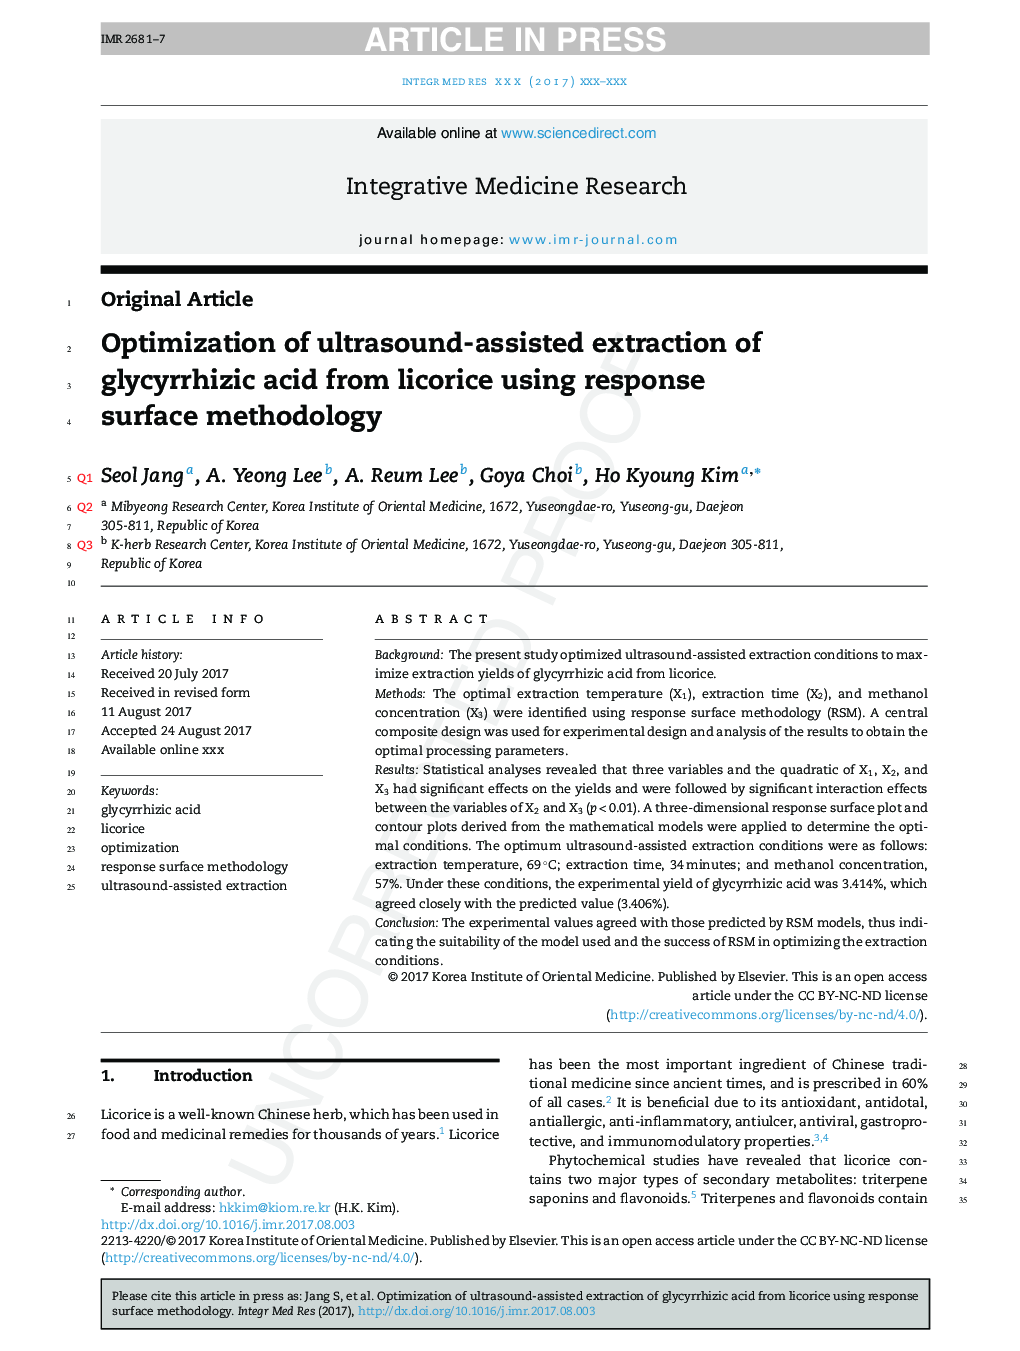 Optimization of ultrasound-assisted extraction of glycyrrhizic acid from licorice using response surface methodology